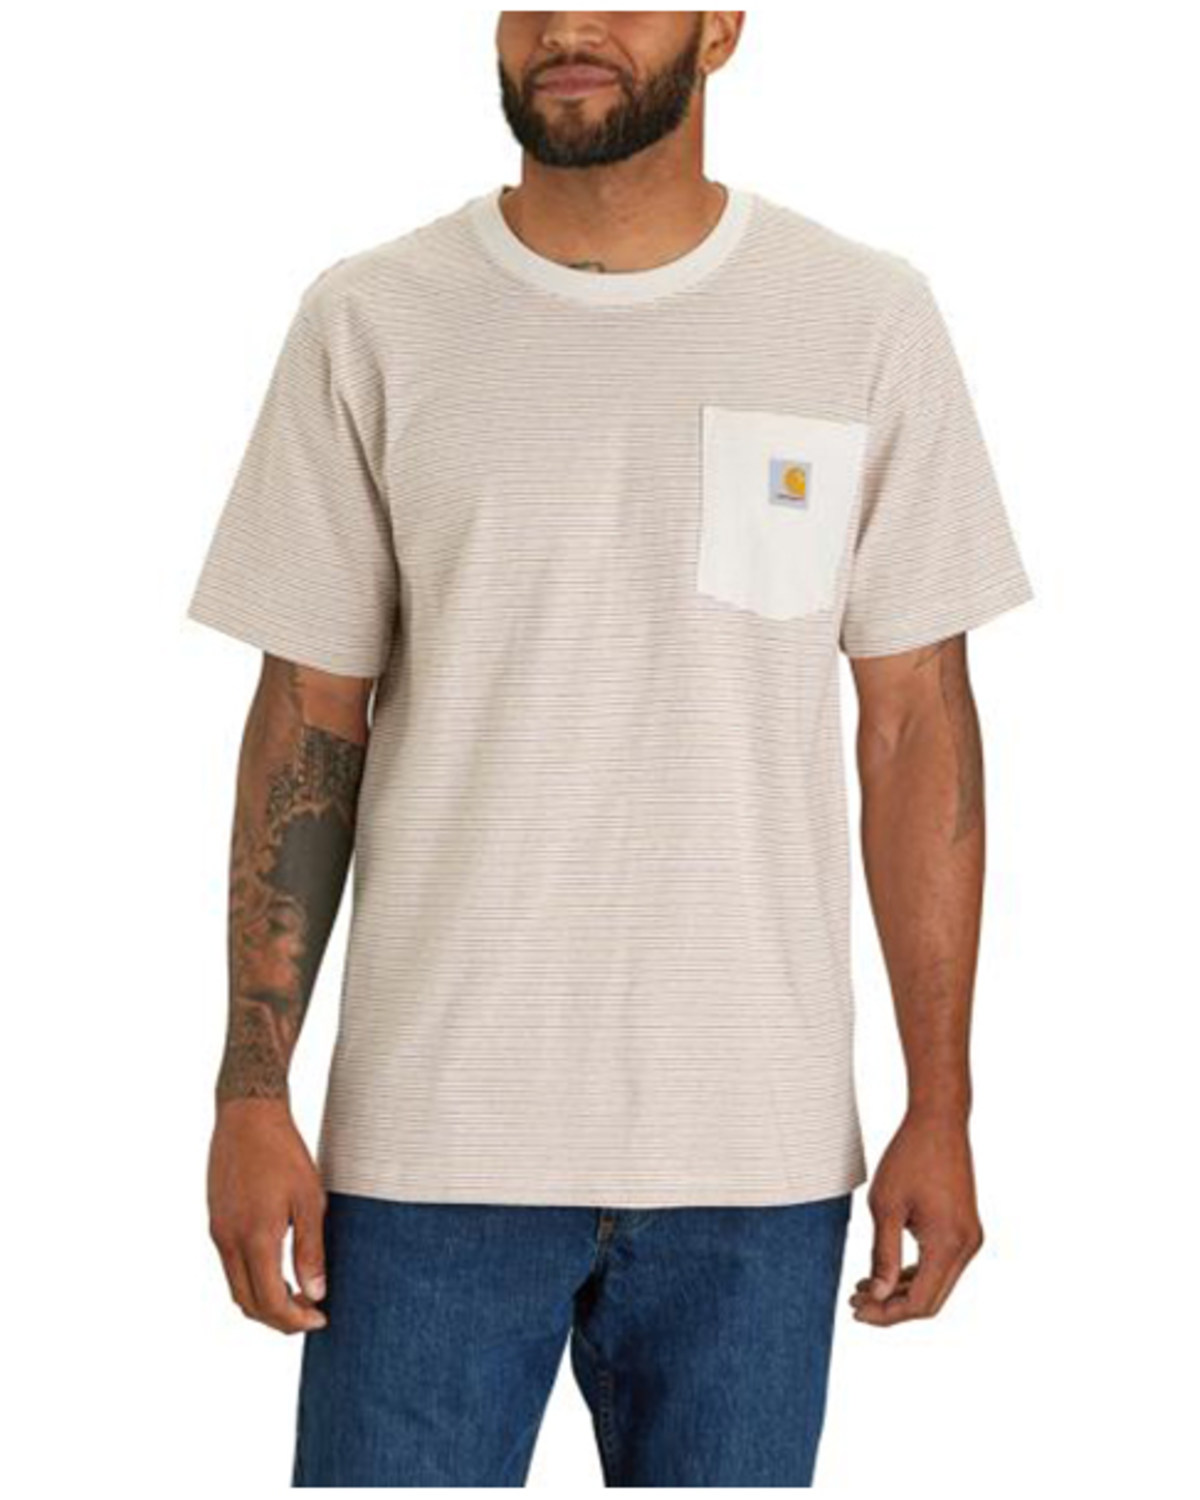 Carhartt Men's Striped Print Relaxed Fit Heavyweight Short Sleeve Pocket T-Shirt - Big